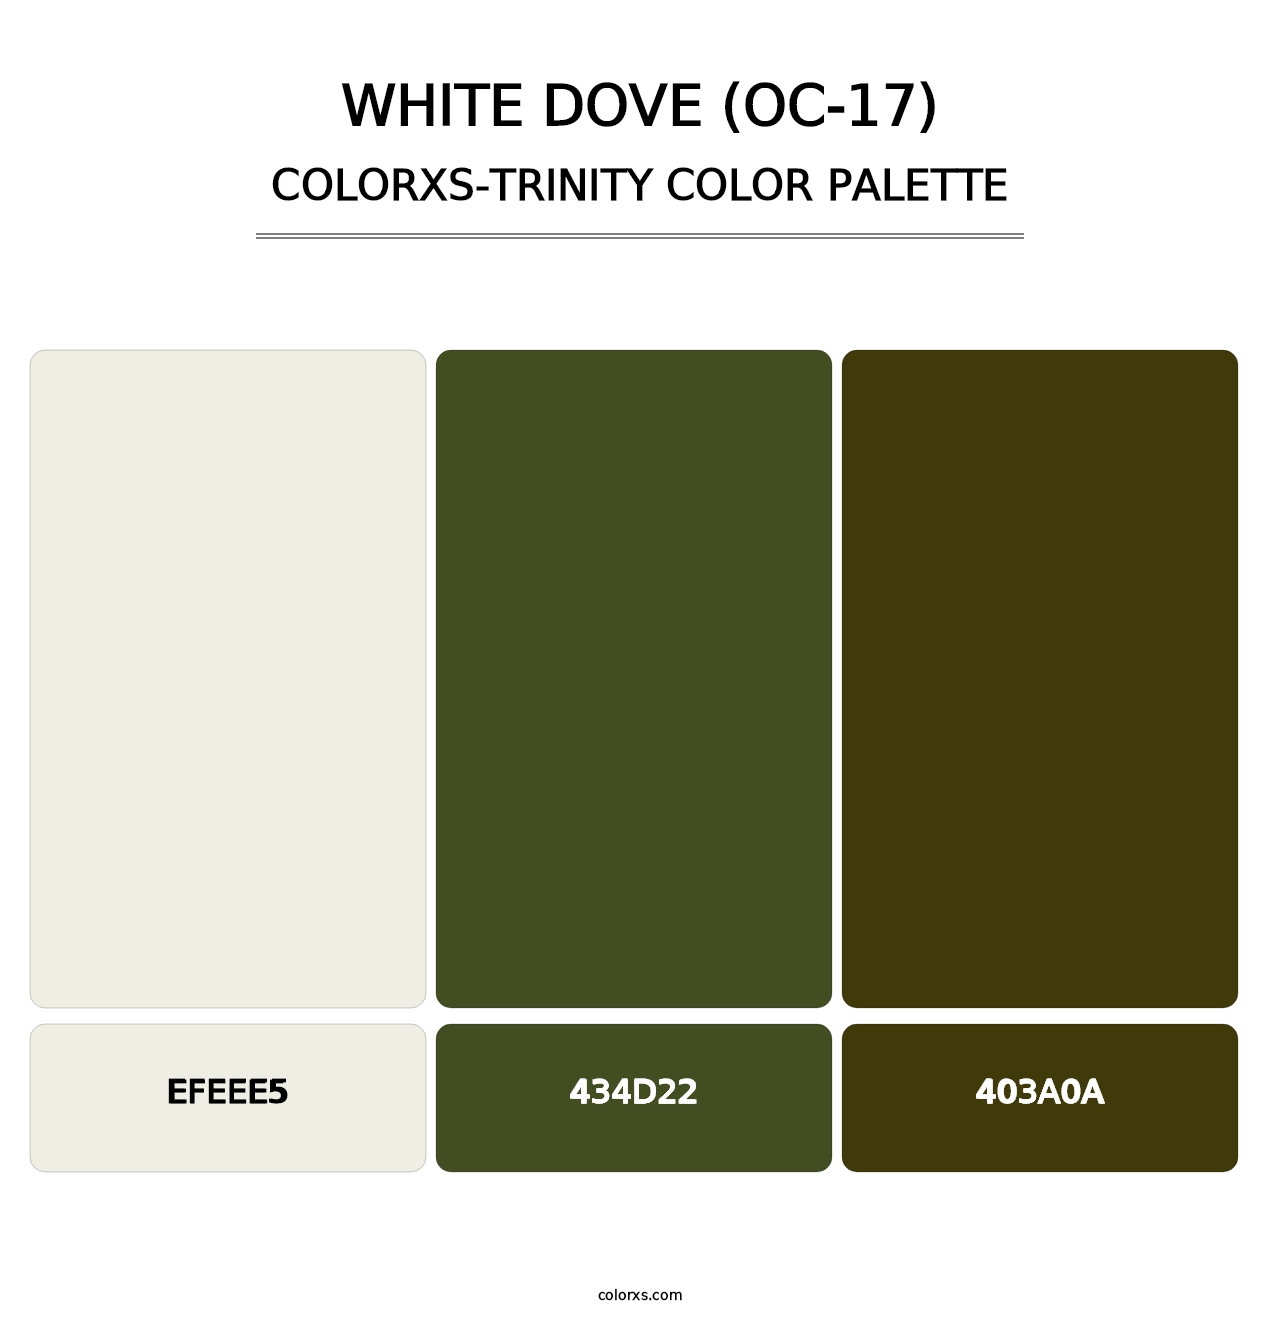 White Dove (OC-17) - Colorxs Trinity Palette